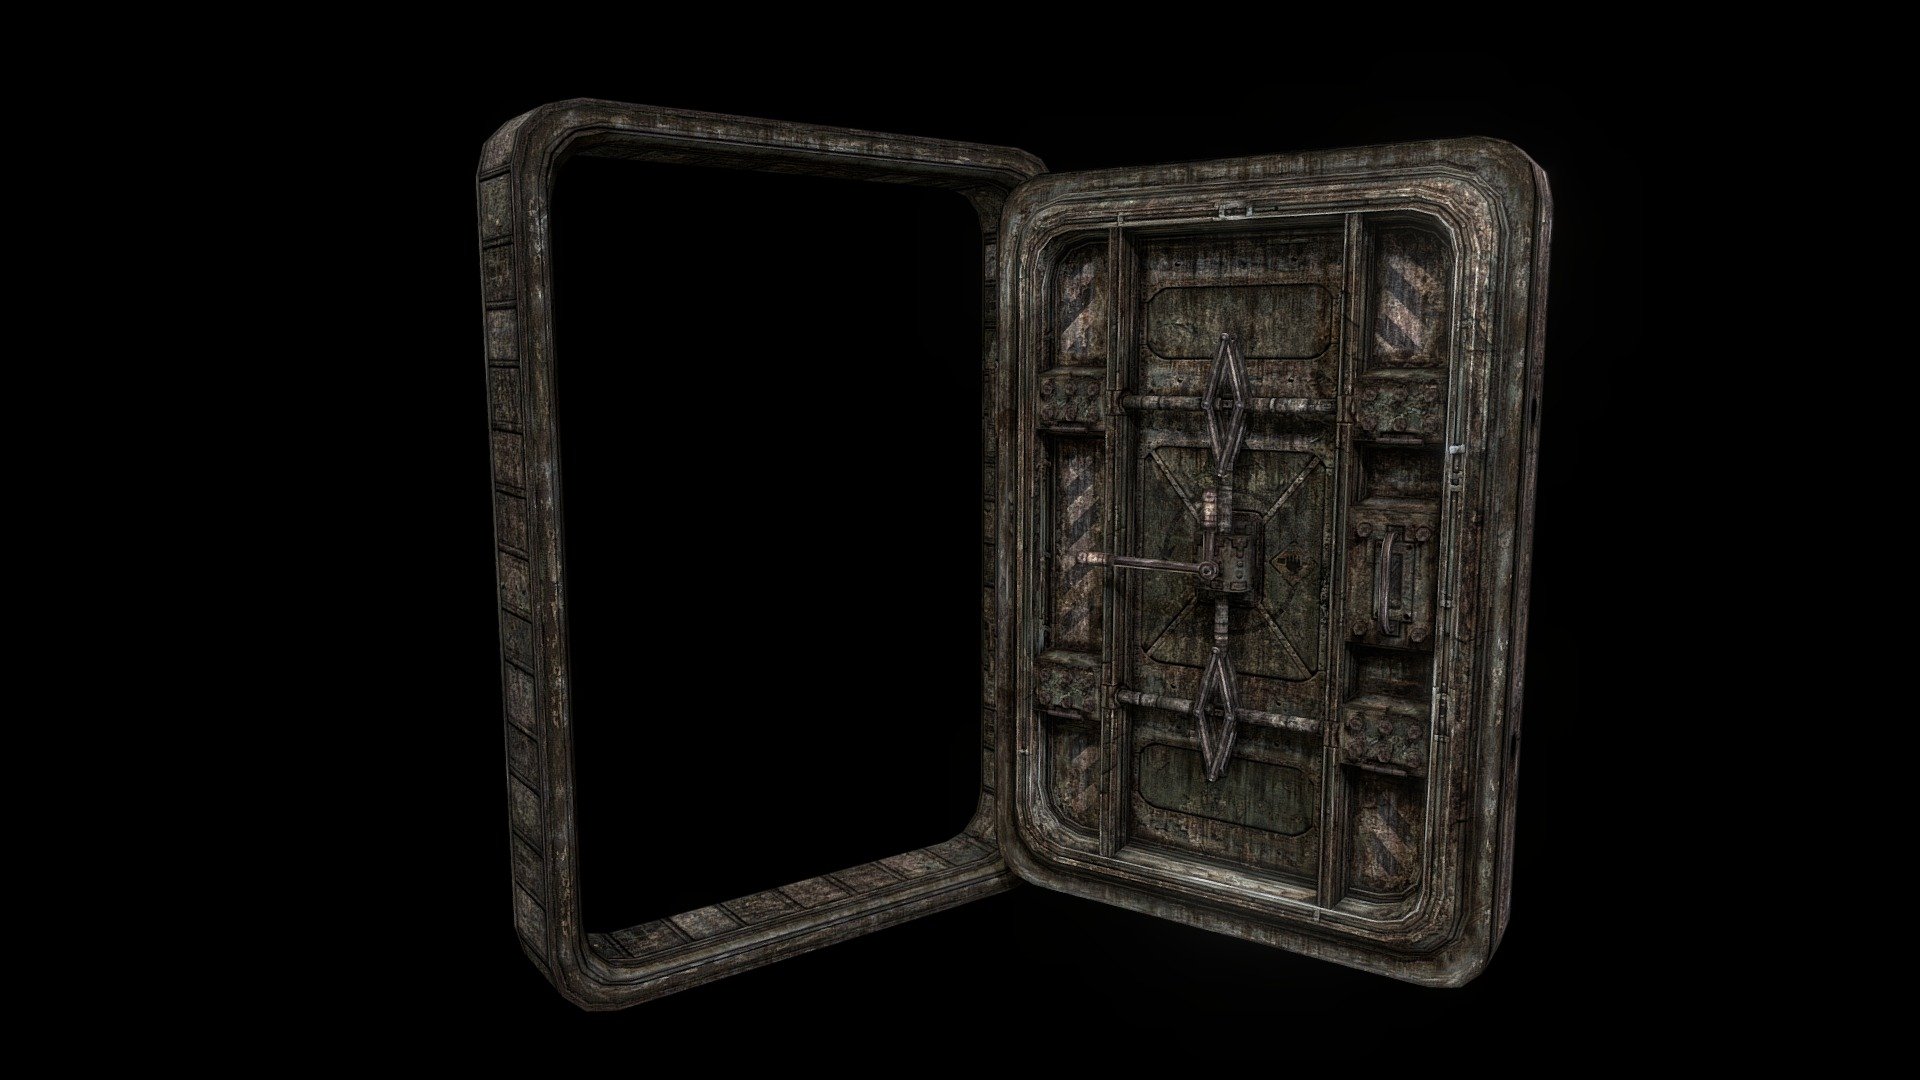 An old rusty soviet bunker door with a lever lock mechanism.
Tools used: Maya, Photoshop, Quixel nDo - Bunker Door - 3D model by Max Ramirez (@variantpolygon) 3d model